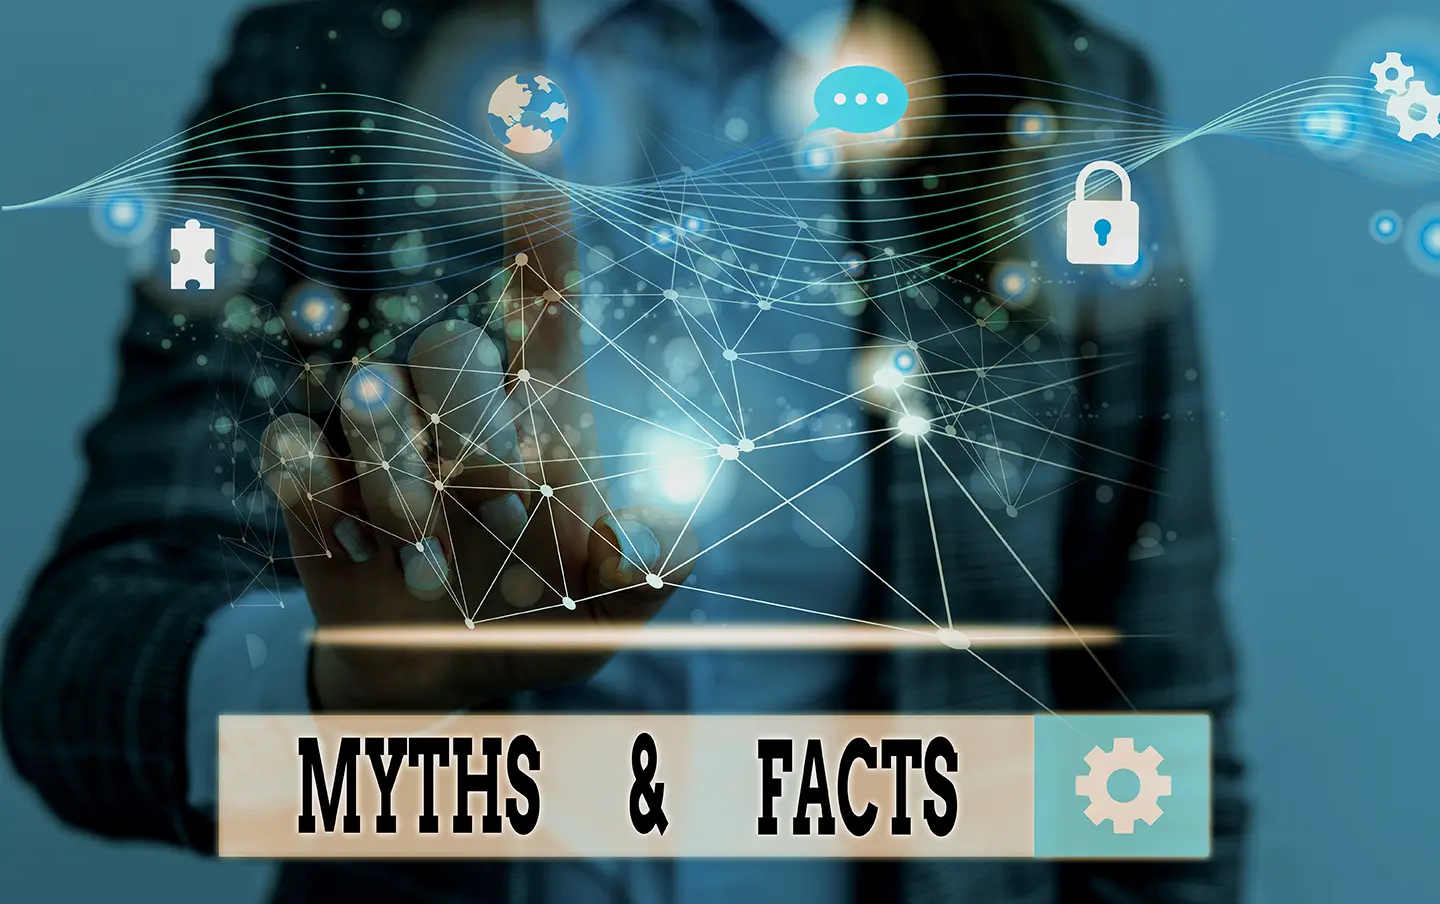 Hombre frente a letrero: Myths & facts sobre la vitualización